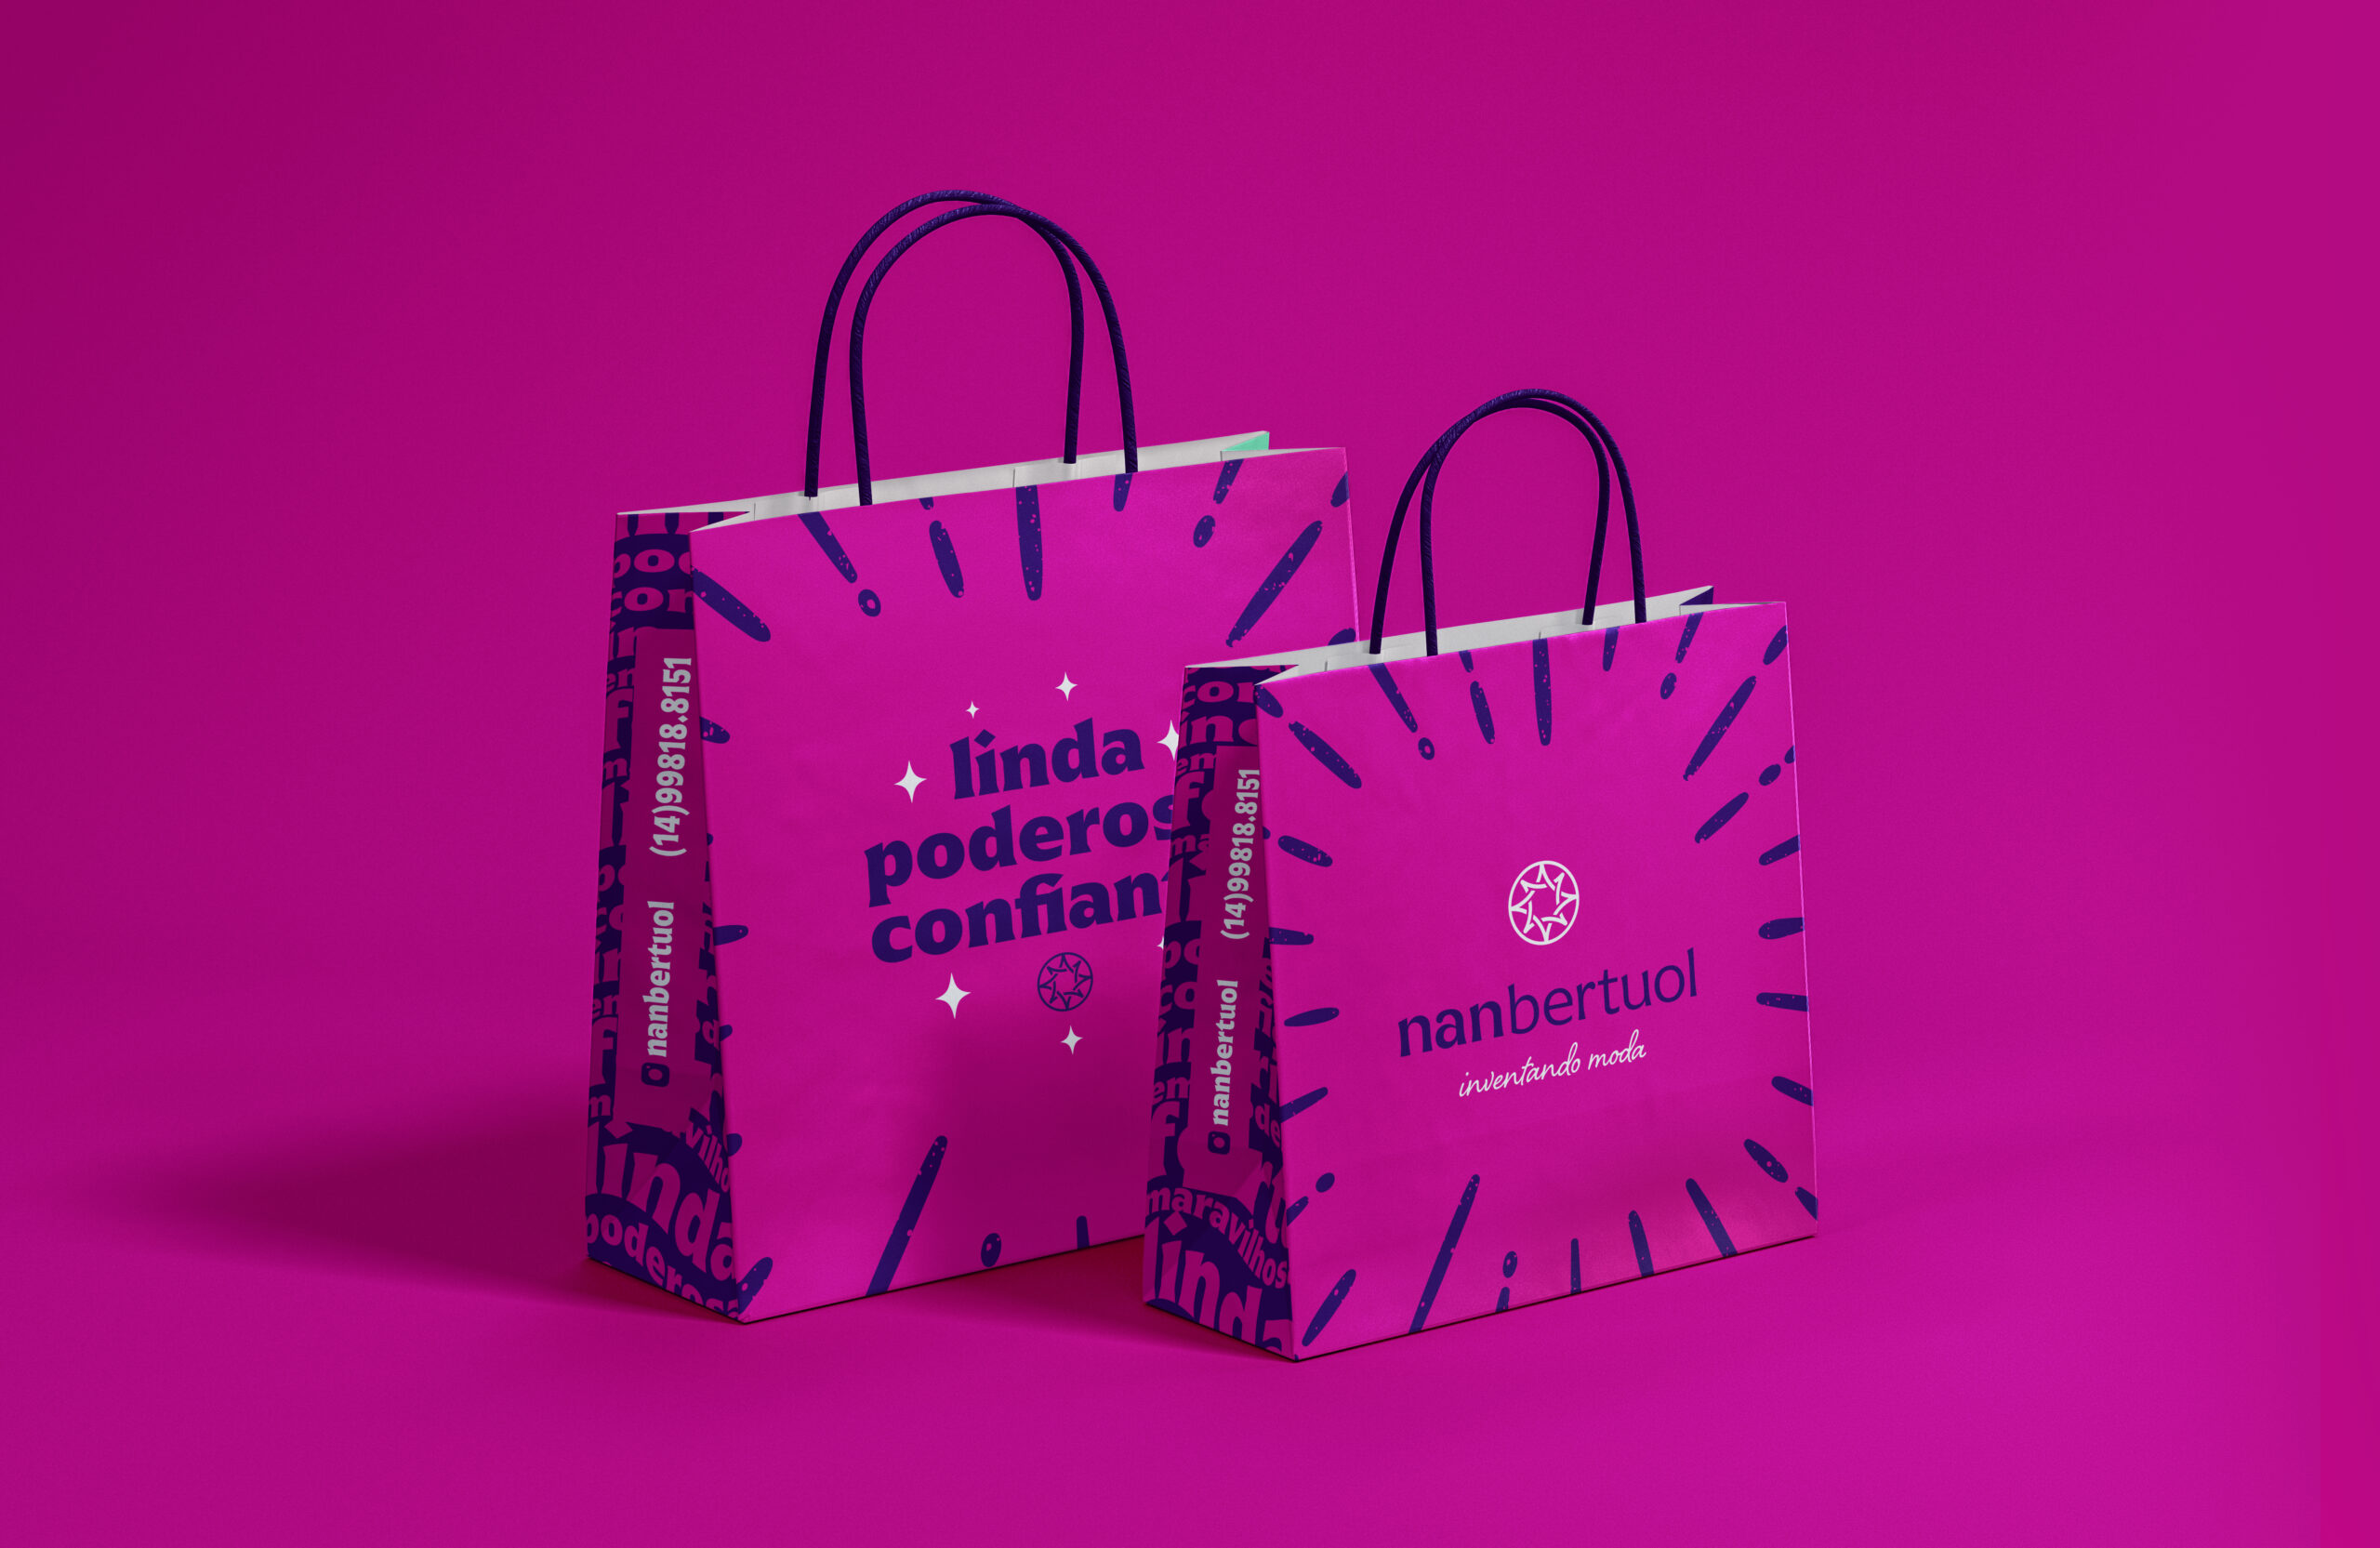 foto de duas sacolas rosas com grafismos da marca além de contar o logotipo em um lado e uma frase em outra (linda, poderosa e confiante).